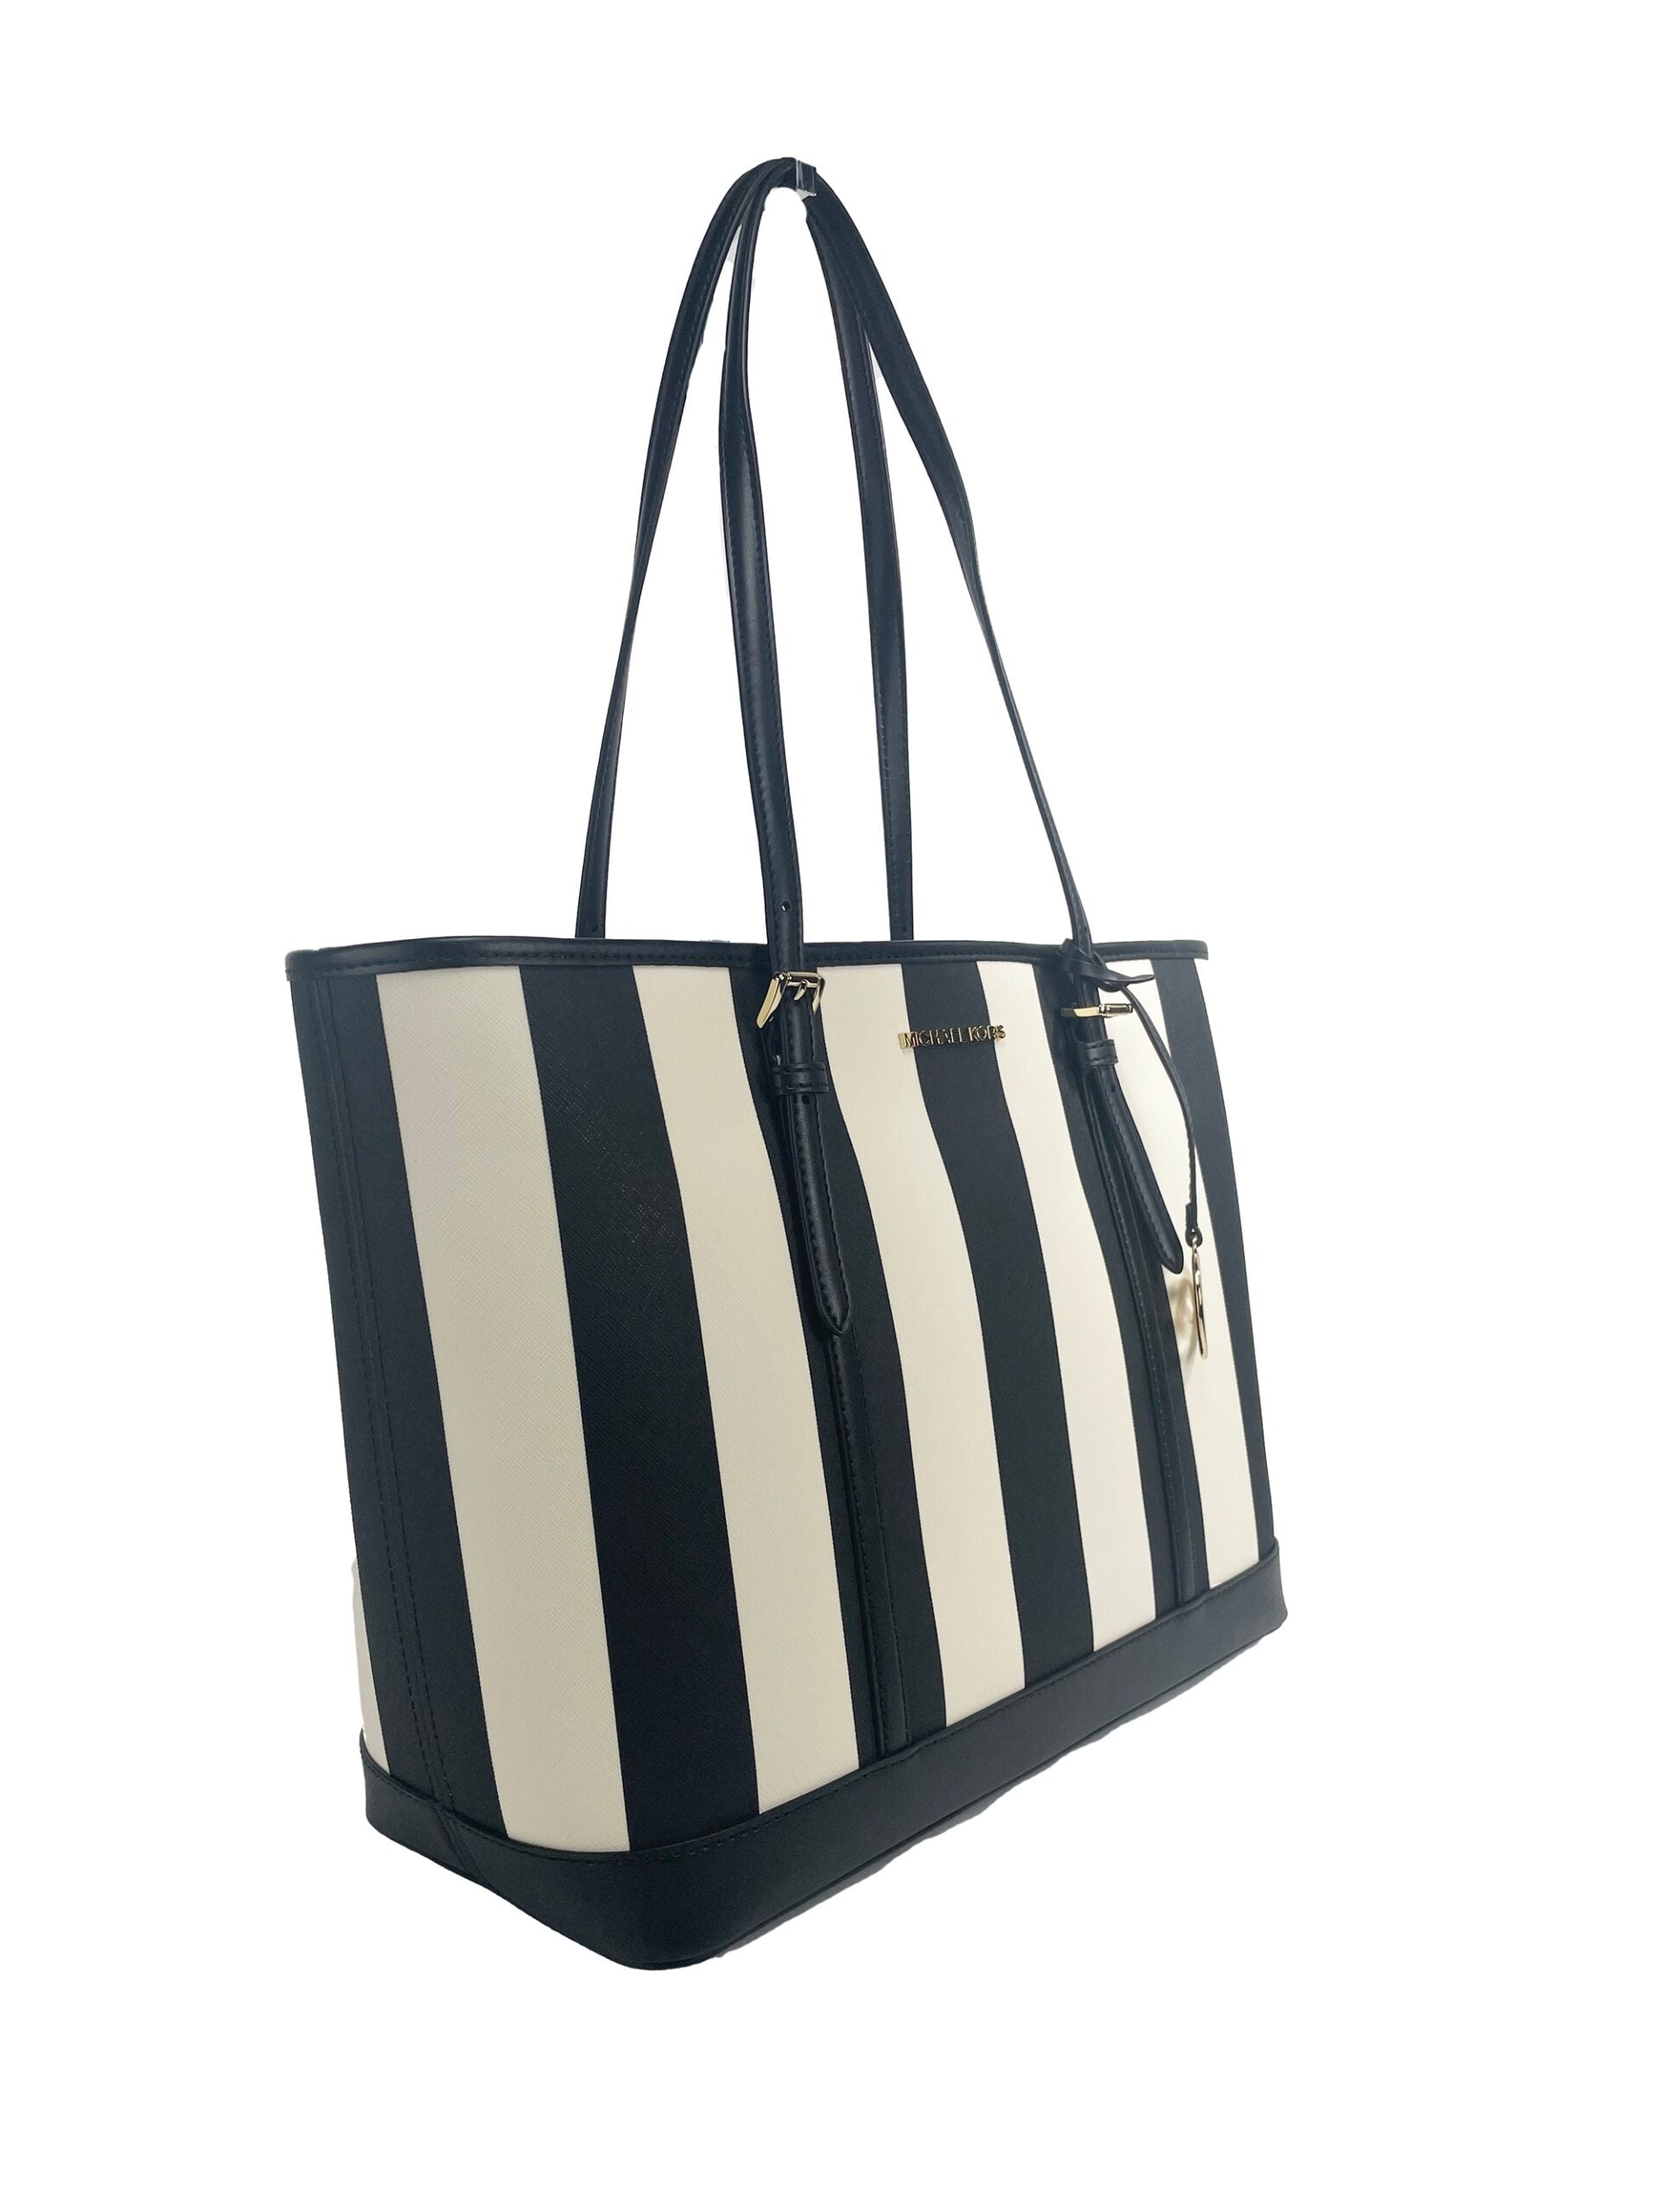 Jet Set Travel Large TZ Shoulder PVC Tote Bag Purse Black Multi - Divitiae Glamour